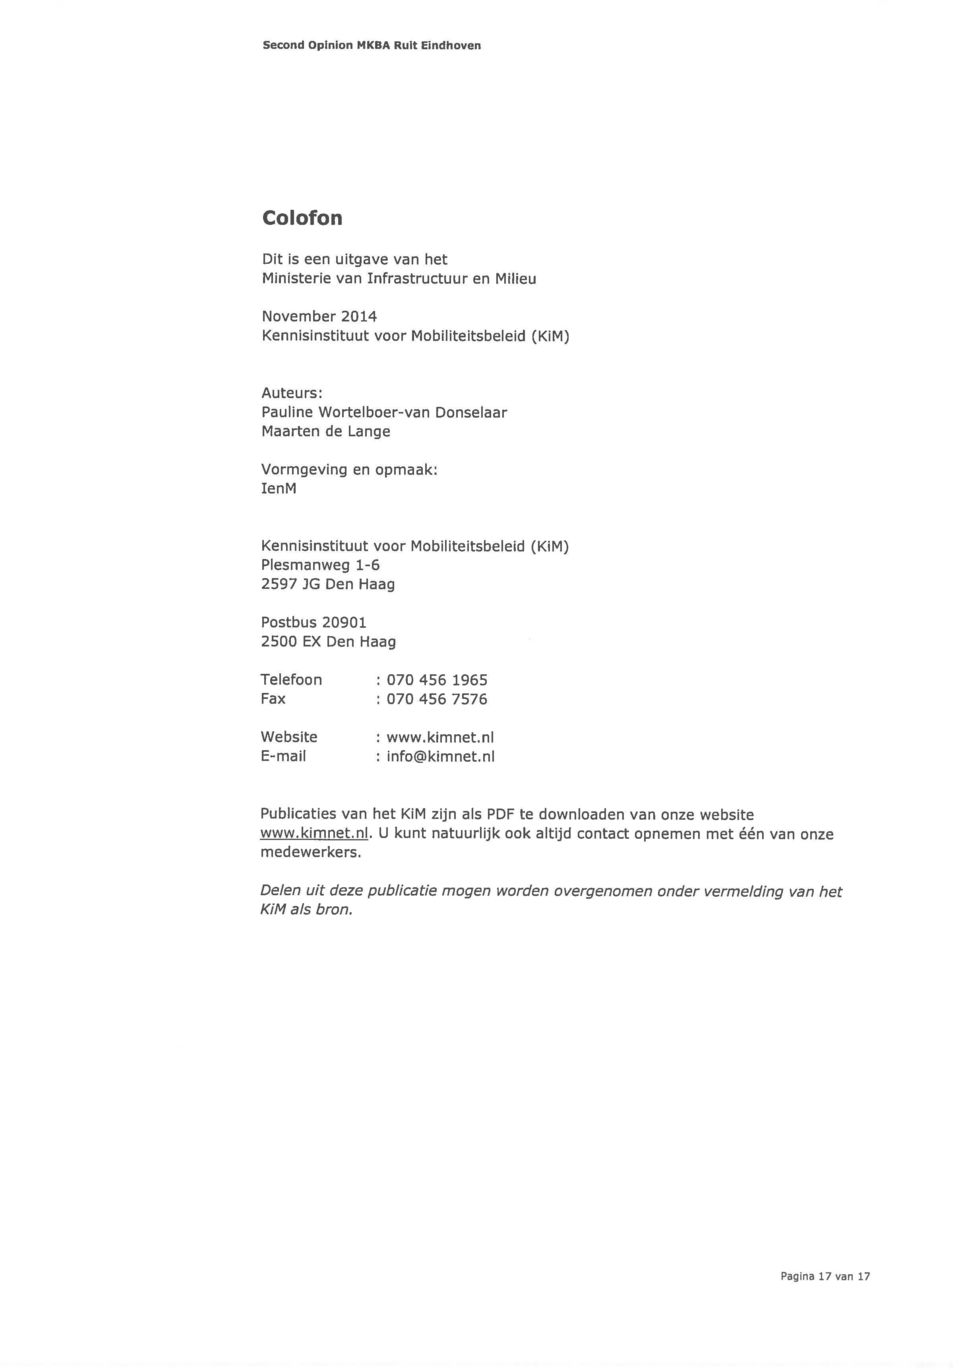 Telefoon : 070 456 1965 Fax : 070 456 7576 Website : www.kimnet.nl E-mail : info@kimnet.nl Publicaties van het KiM zijn als PDF te downloaden van onze website www.kimnet.nl. U kunt natuurlijk ook altijd contact opnemen met één van onze medewerkers.